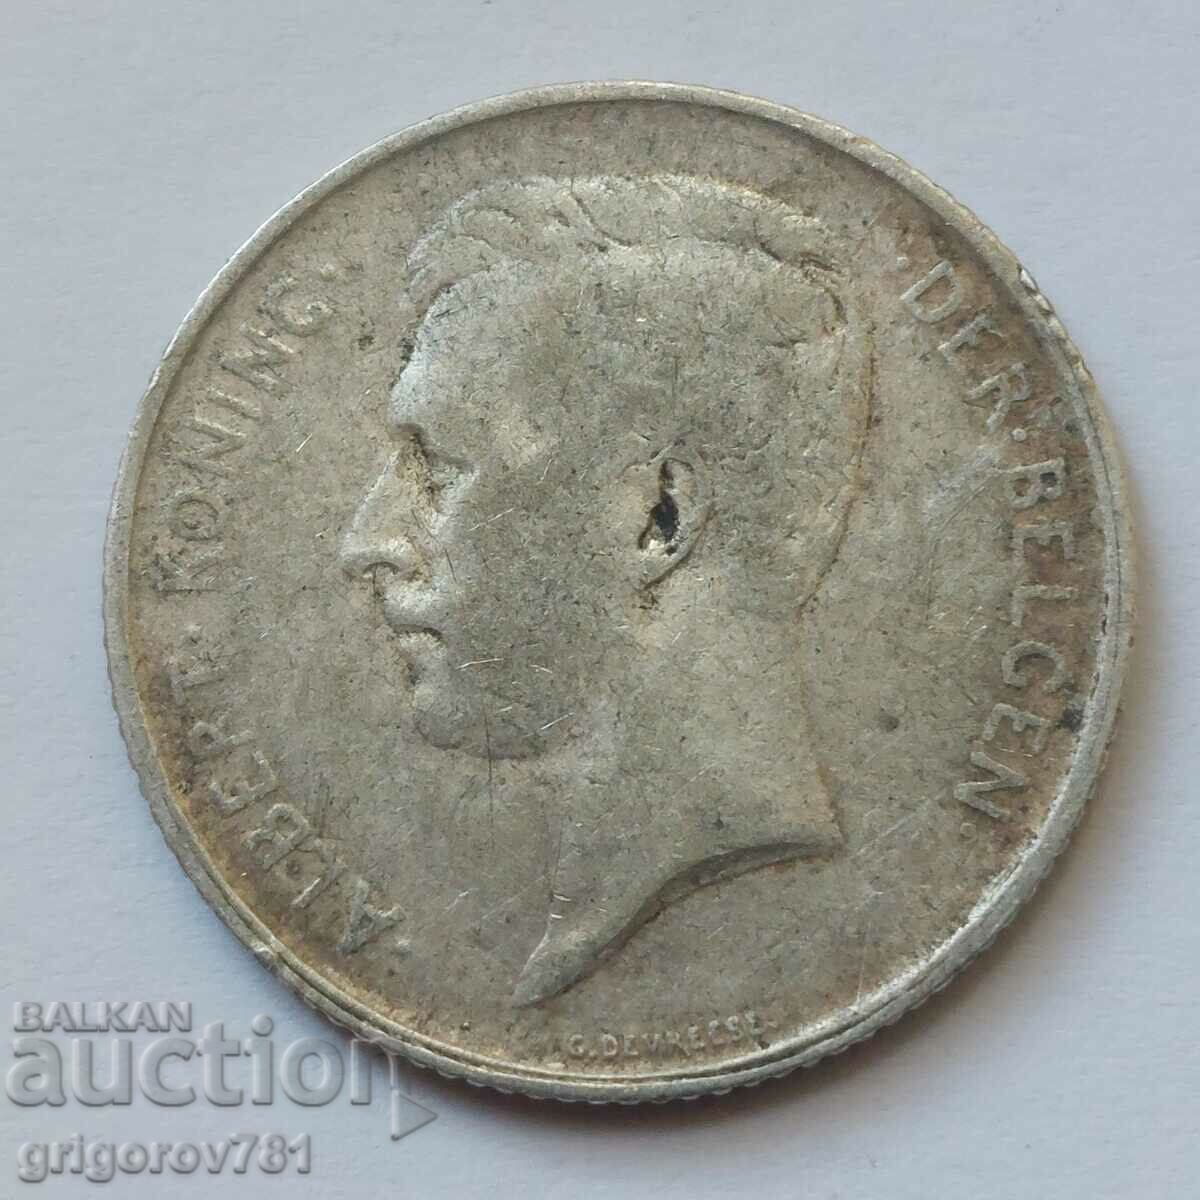 Ασημένιο 1 φράγκου Βέλγιο 1912 - ασημένιο νόμισμα #65